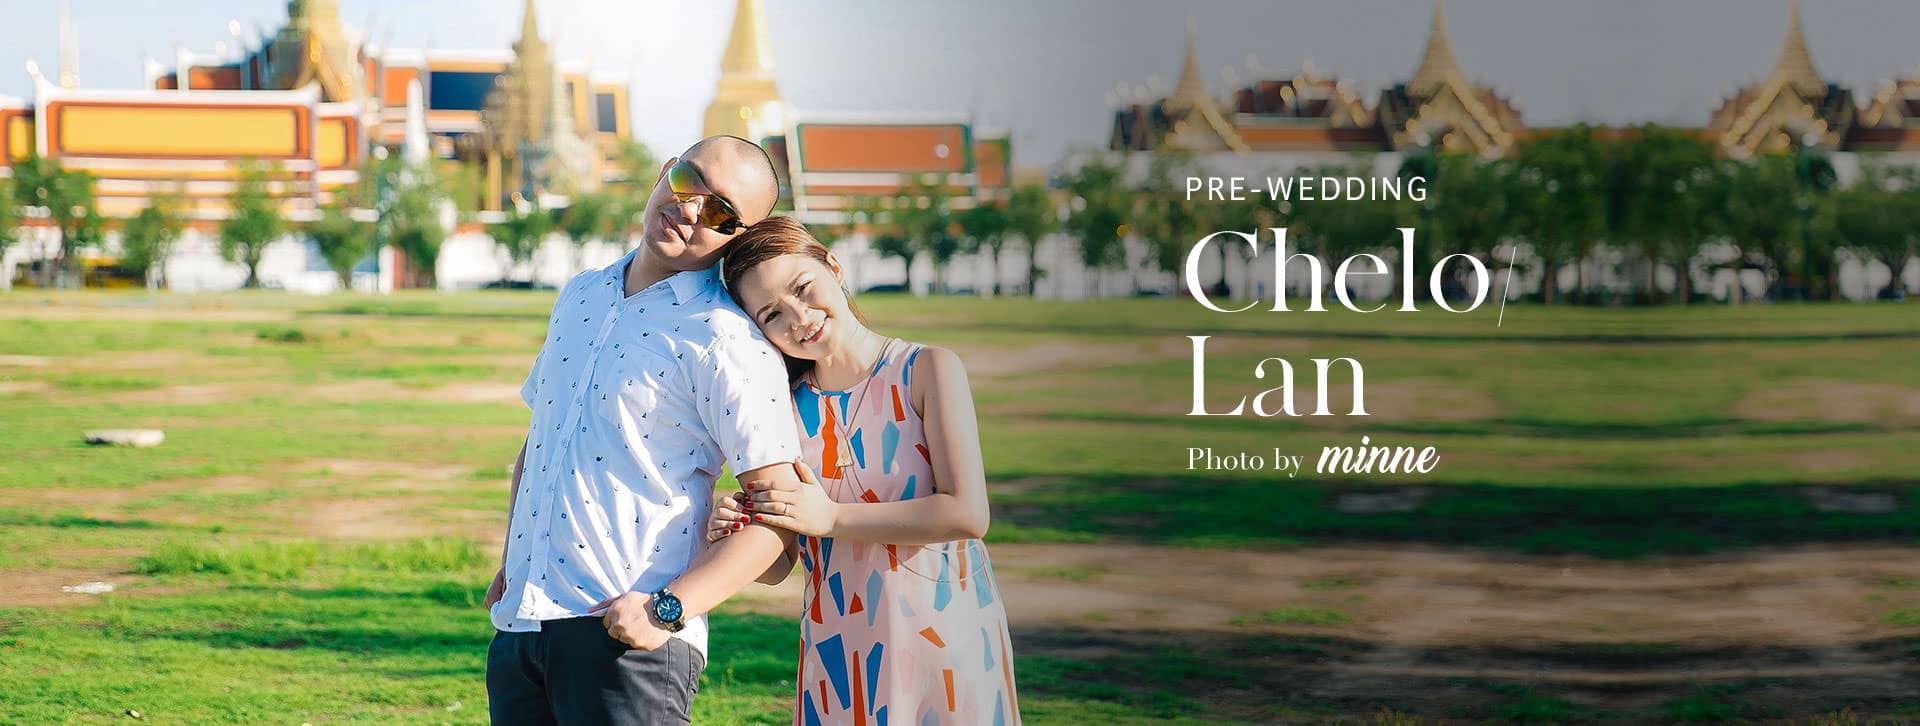 couple photo shoot in bangkok thailand chelo long cover